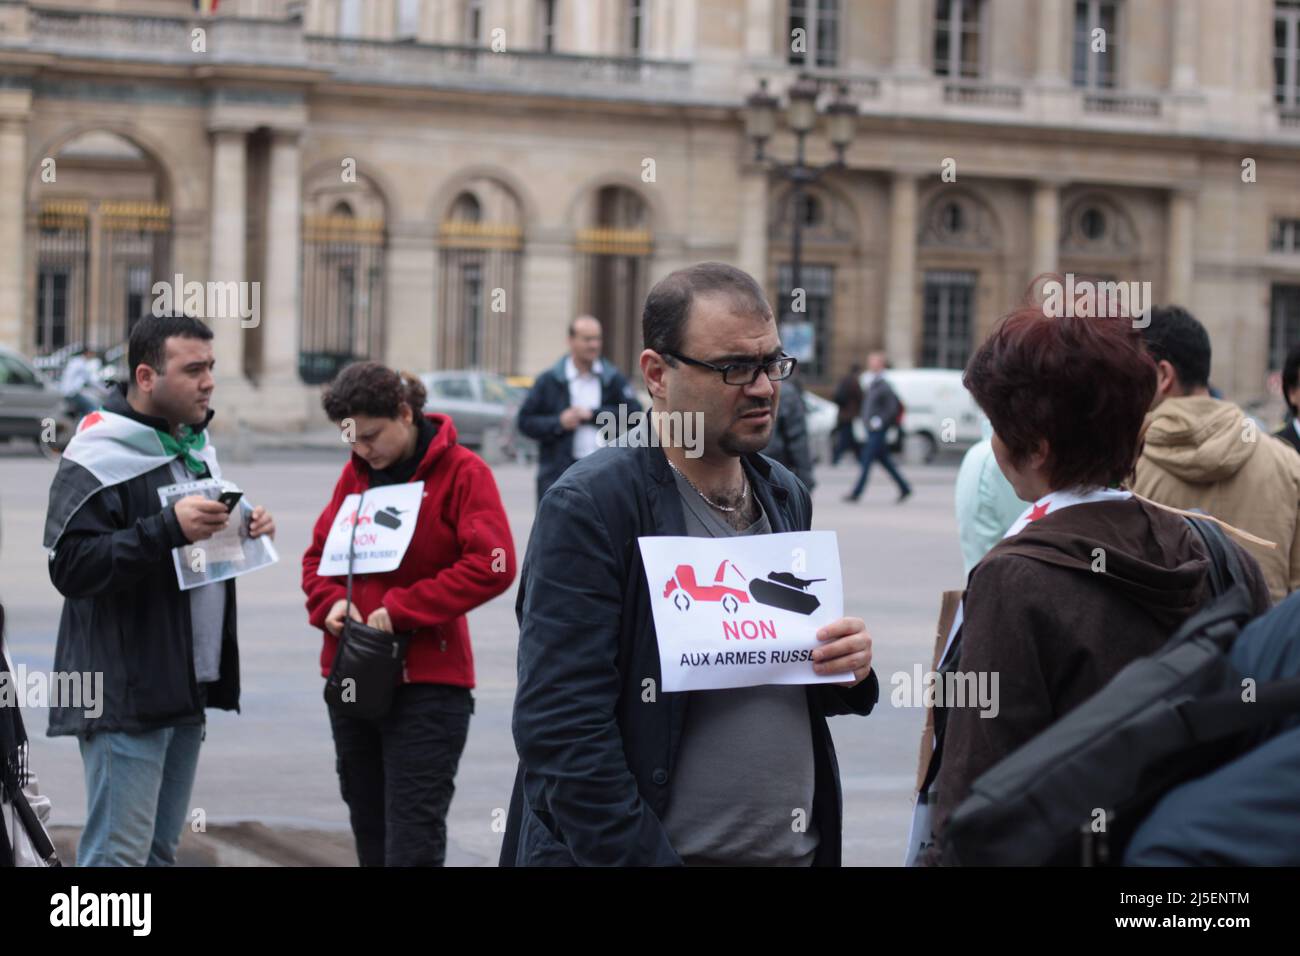 Manifestation Avaaz contre le salon mondial d'armement Eurosatory : activiste syrien 'non aux armes russes' Stock Photo